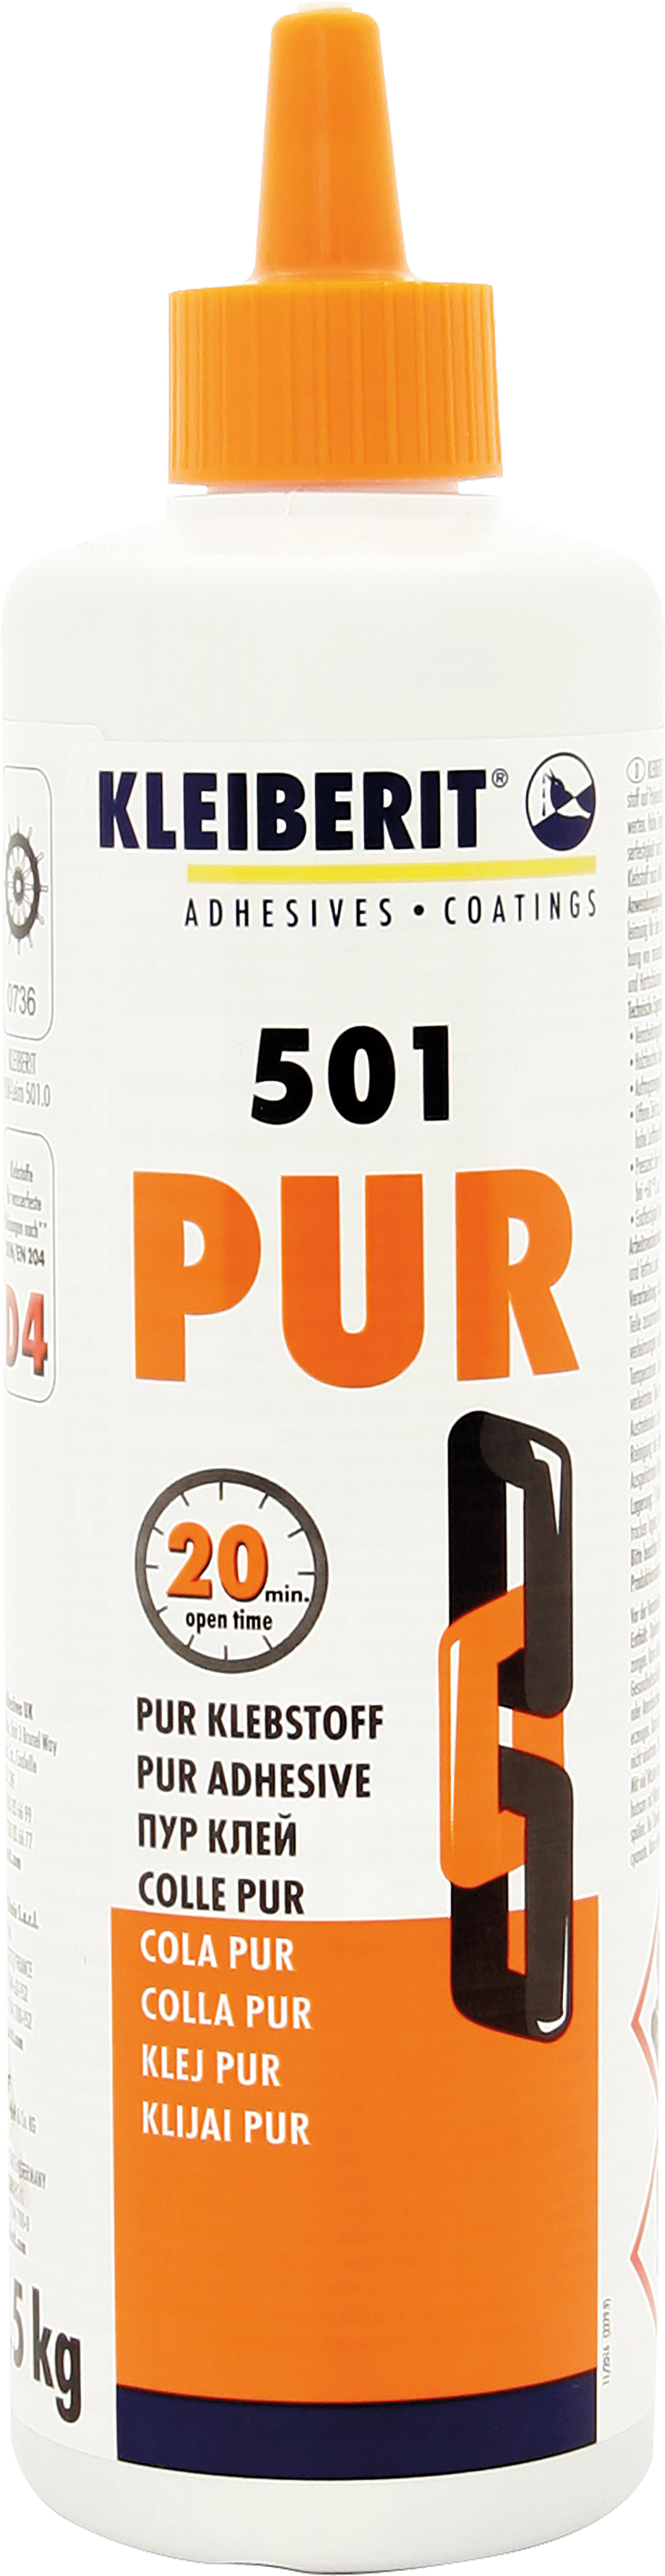 PUR-Leim 501.0